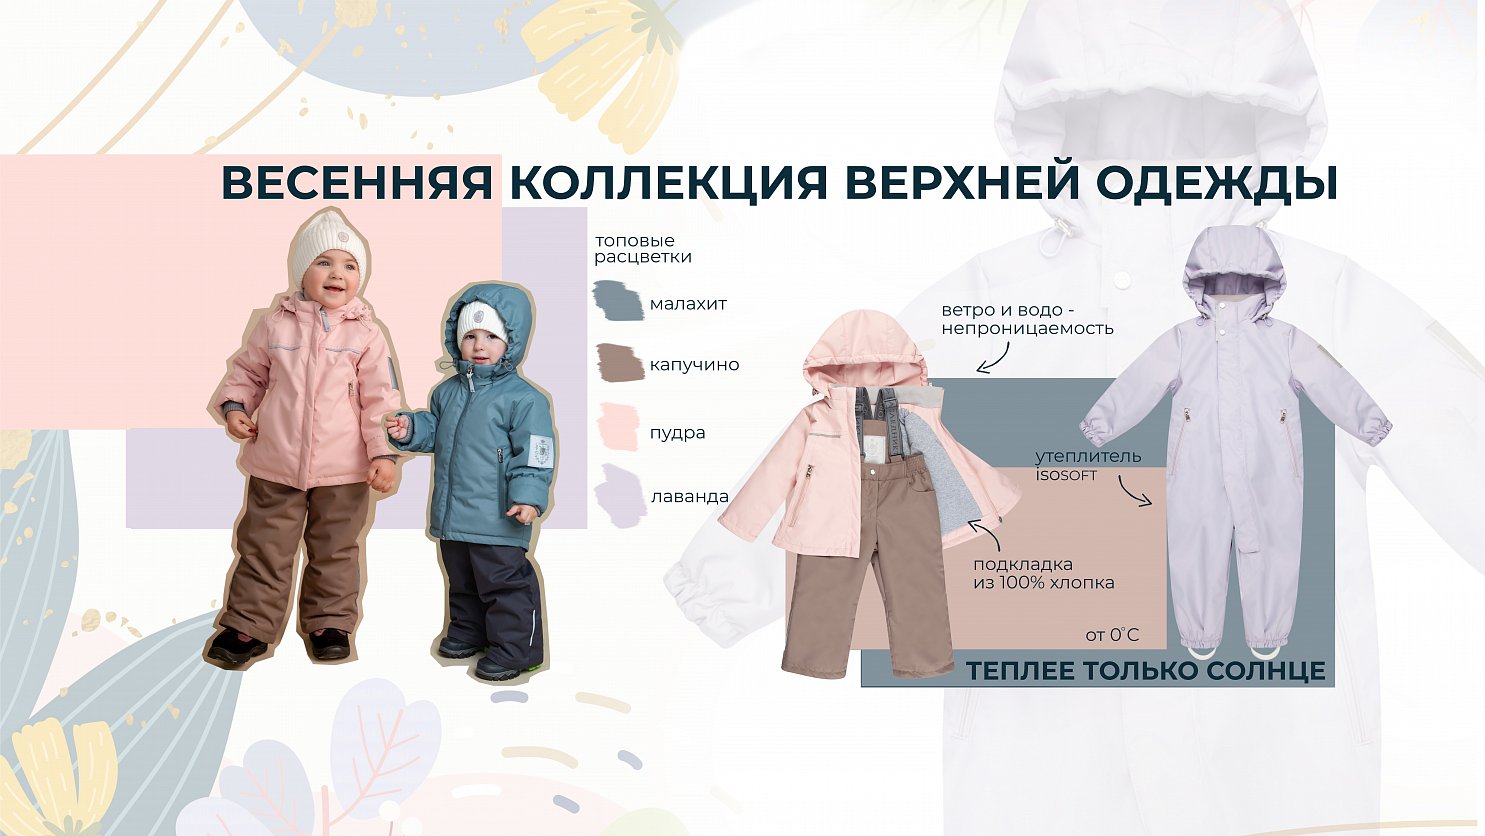 Домаркет - интернет-магазин сети магазинов товаров для дома с доставкой по России